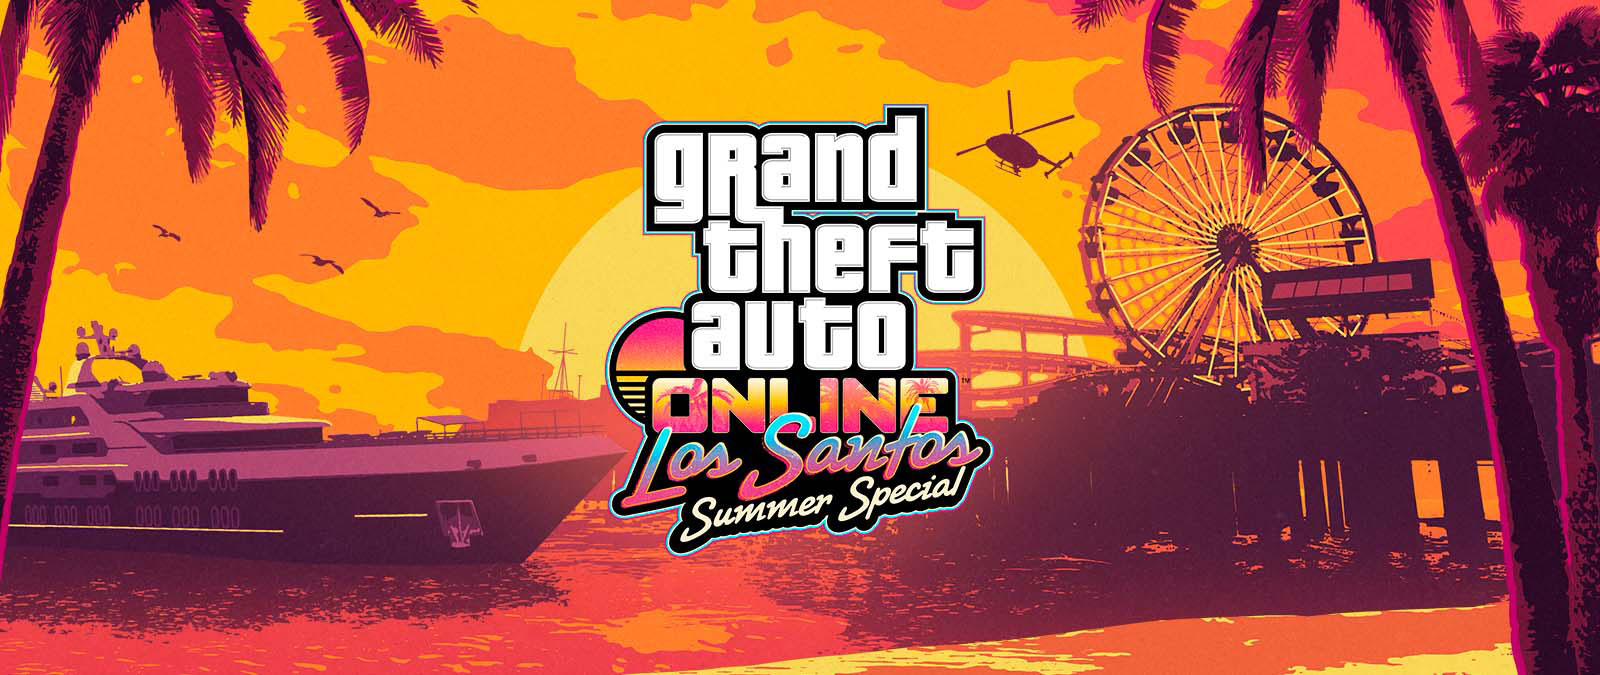 Grand Theft Auto Online. Los Santos Summer Special. Un yate, una noria y un helicóptero al atardecer